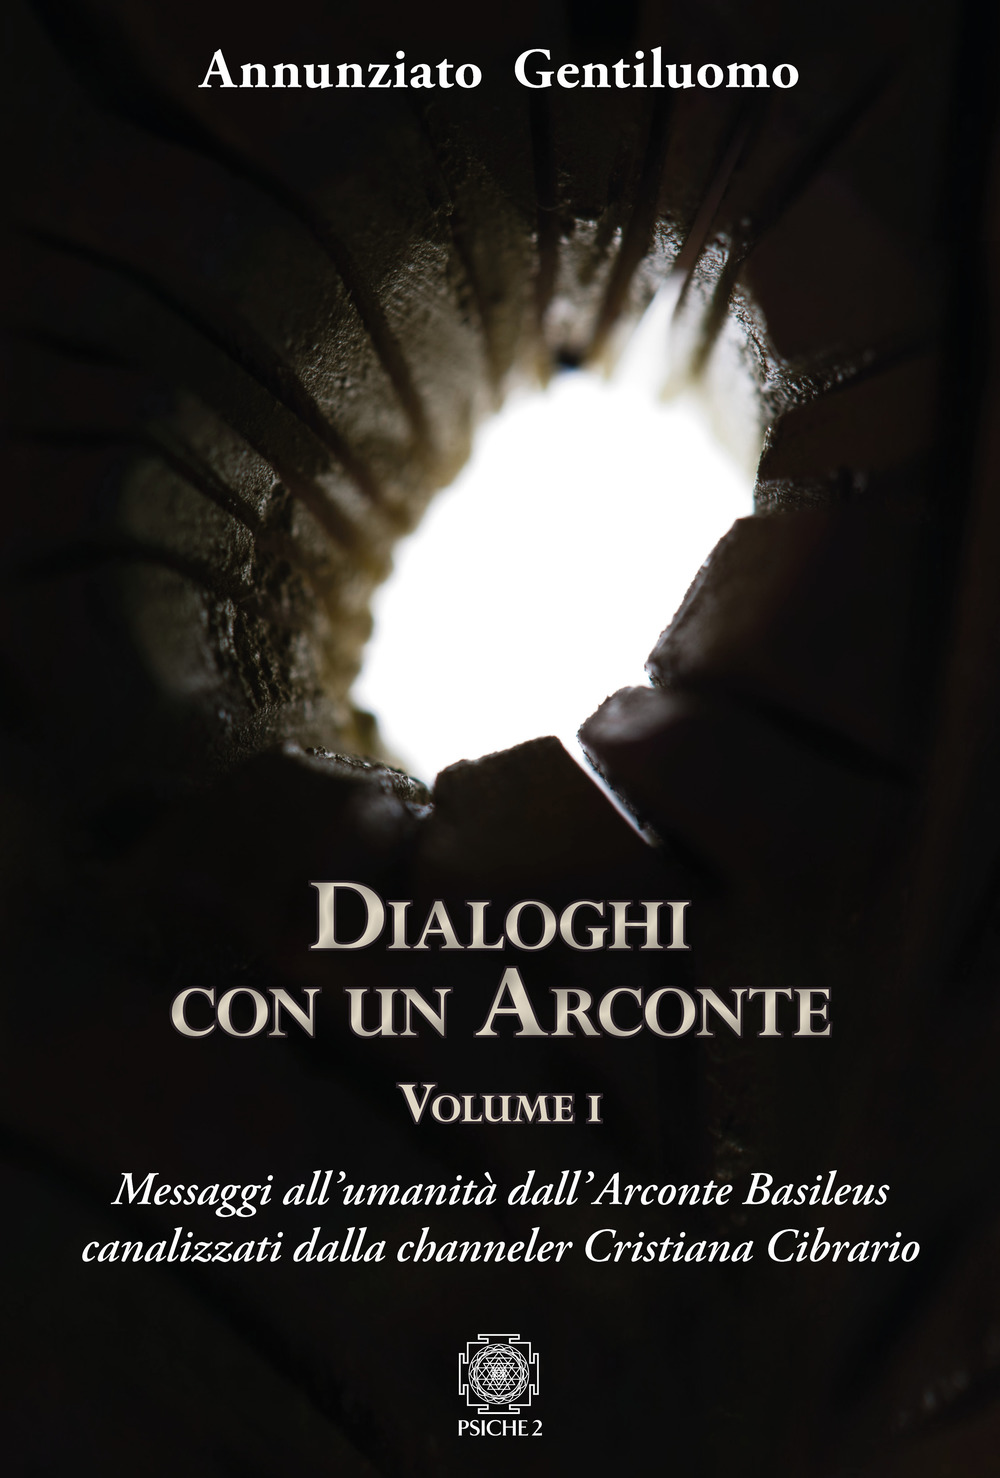 Libri Annunziato Gentiluomo - Dialoghi Con Un Arconte Vol 01 NUOVO SIGILLATO, EDIZIONE DEL 24/09/2019 SUBITO DISPONIBILE